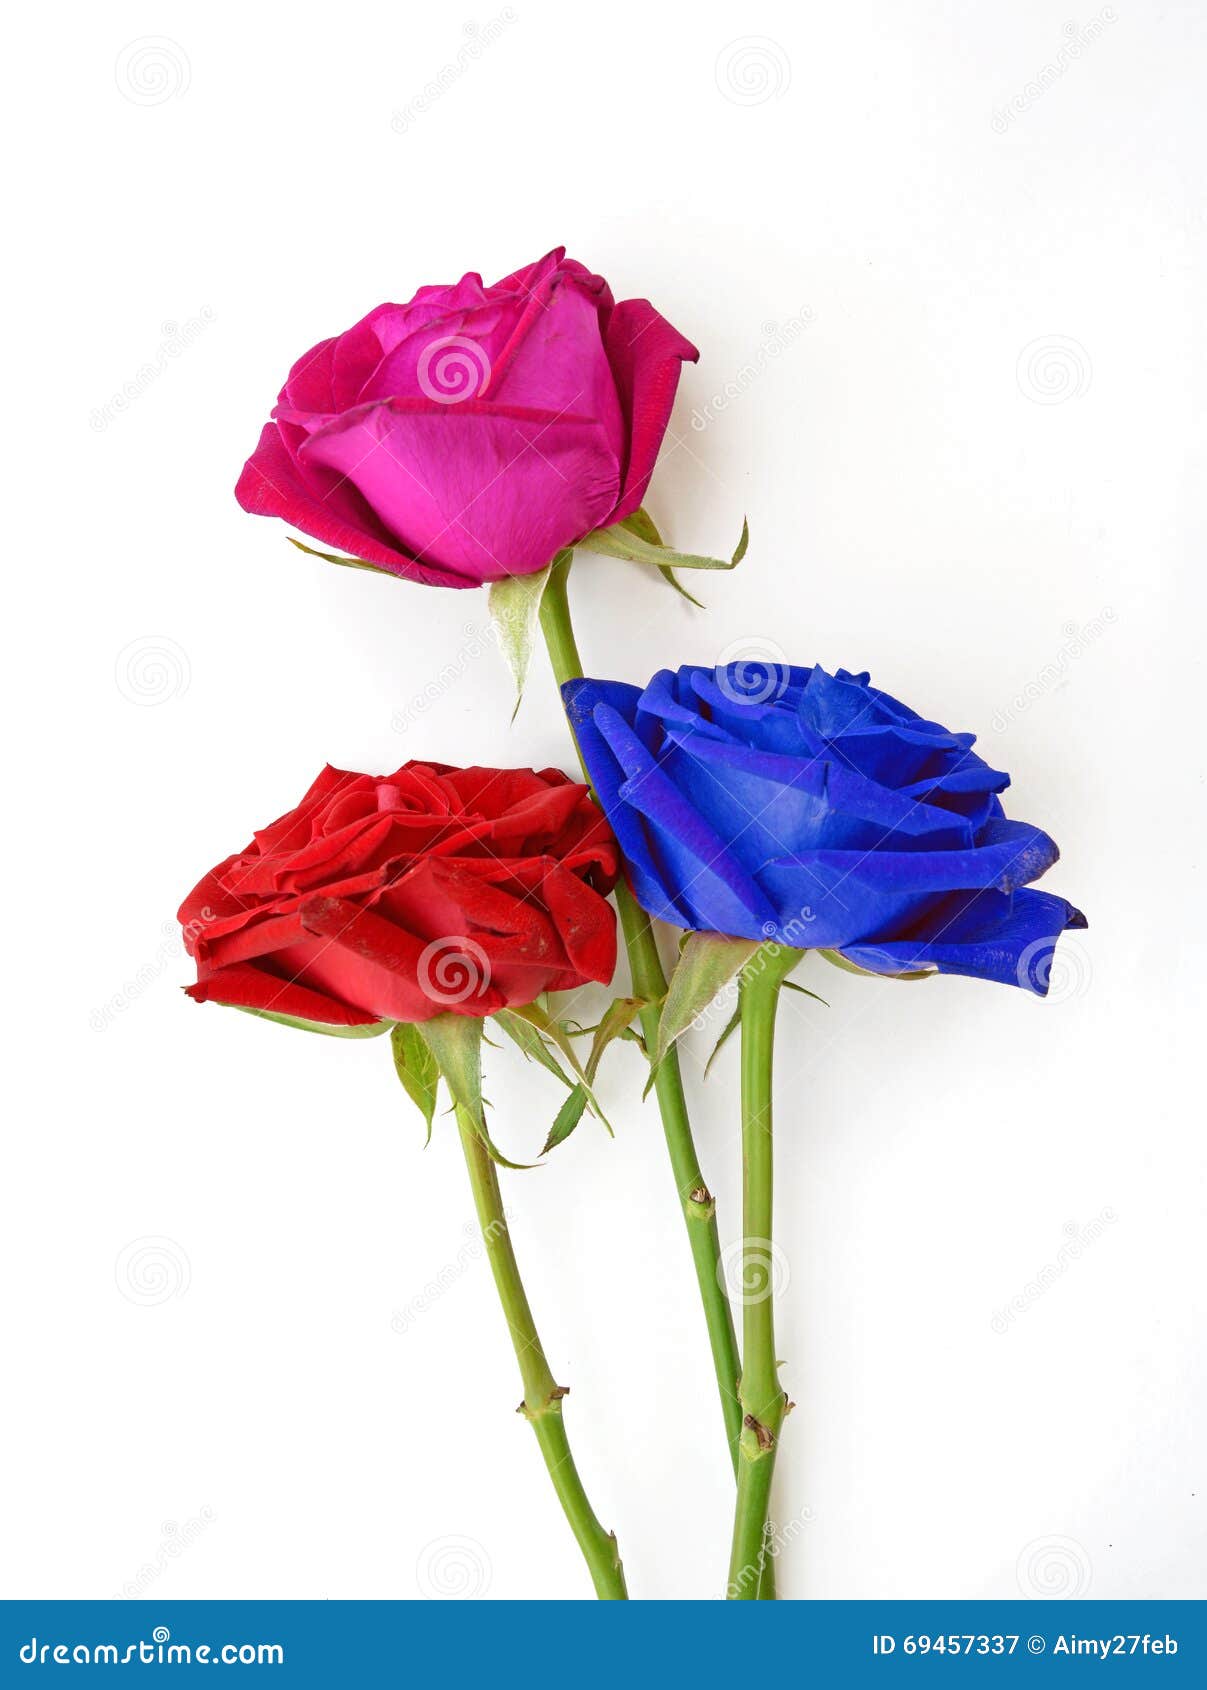 450 Rosas Rojas Y Azules Fotos de stock - Fotos libres de regalías de  Dreamstime